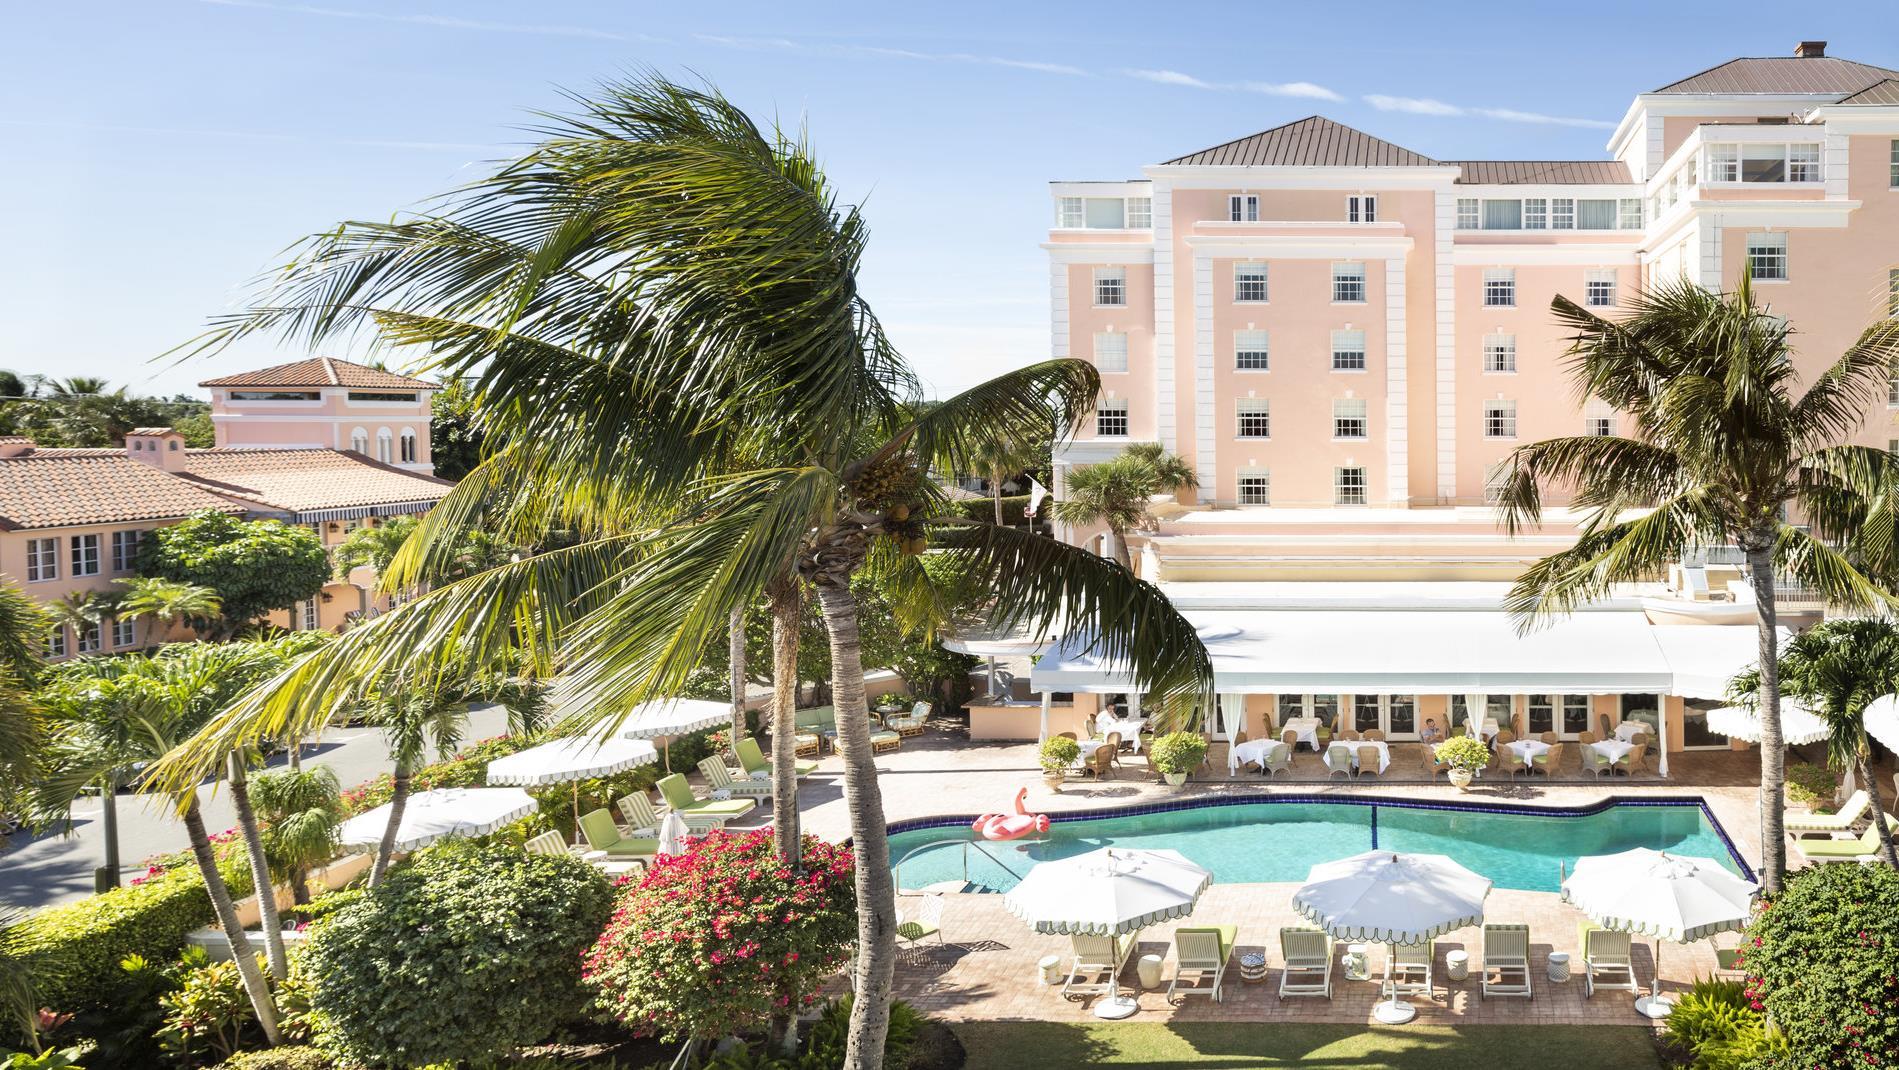 The Colony Hotel Palm Beach-Fl in Lake Worth, FL